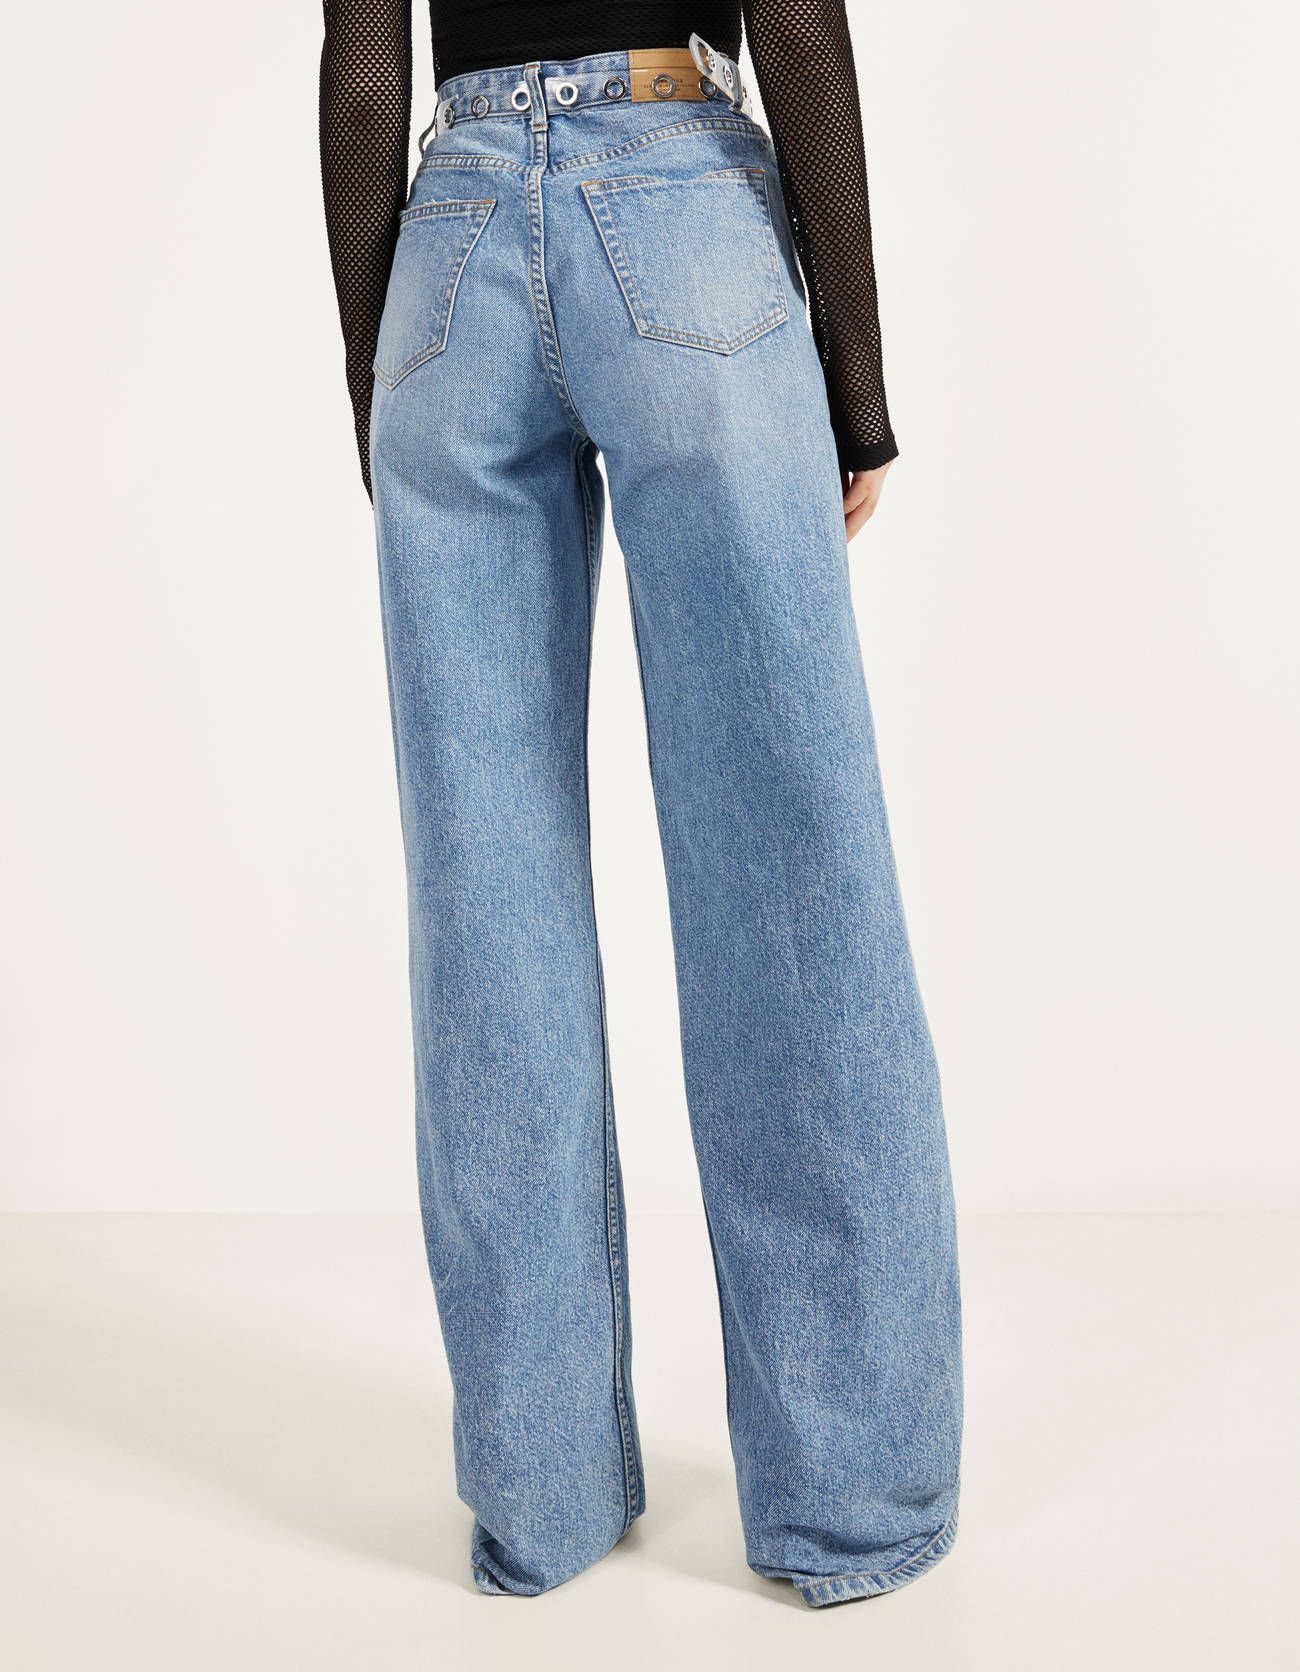 Jeans 2020, quelli Bershka donna sono pura moda anni 90